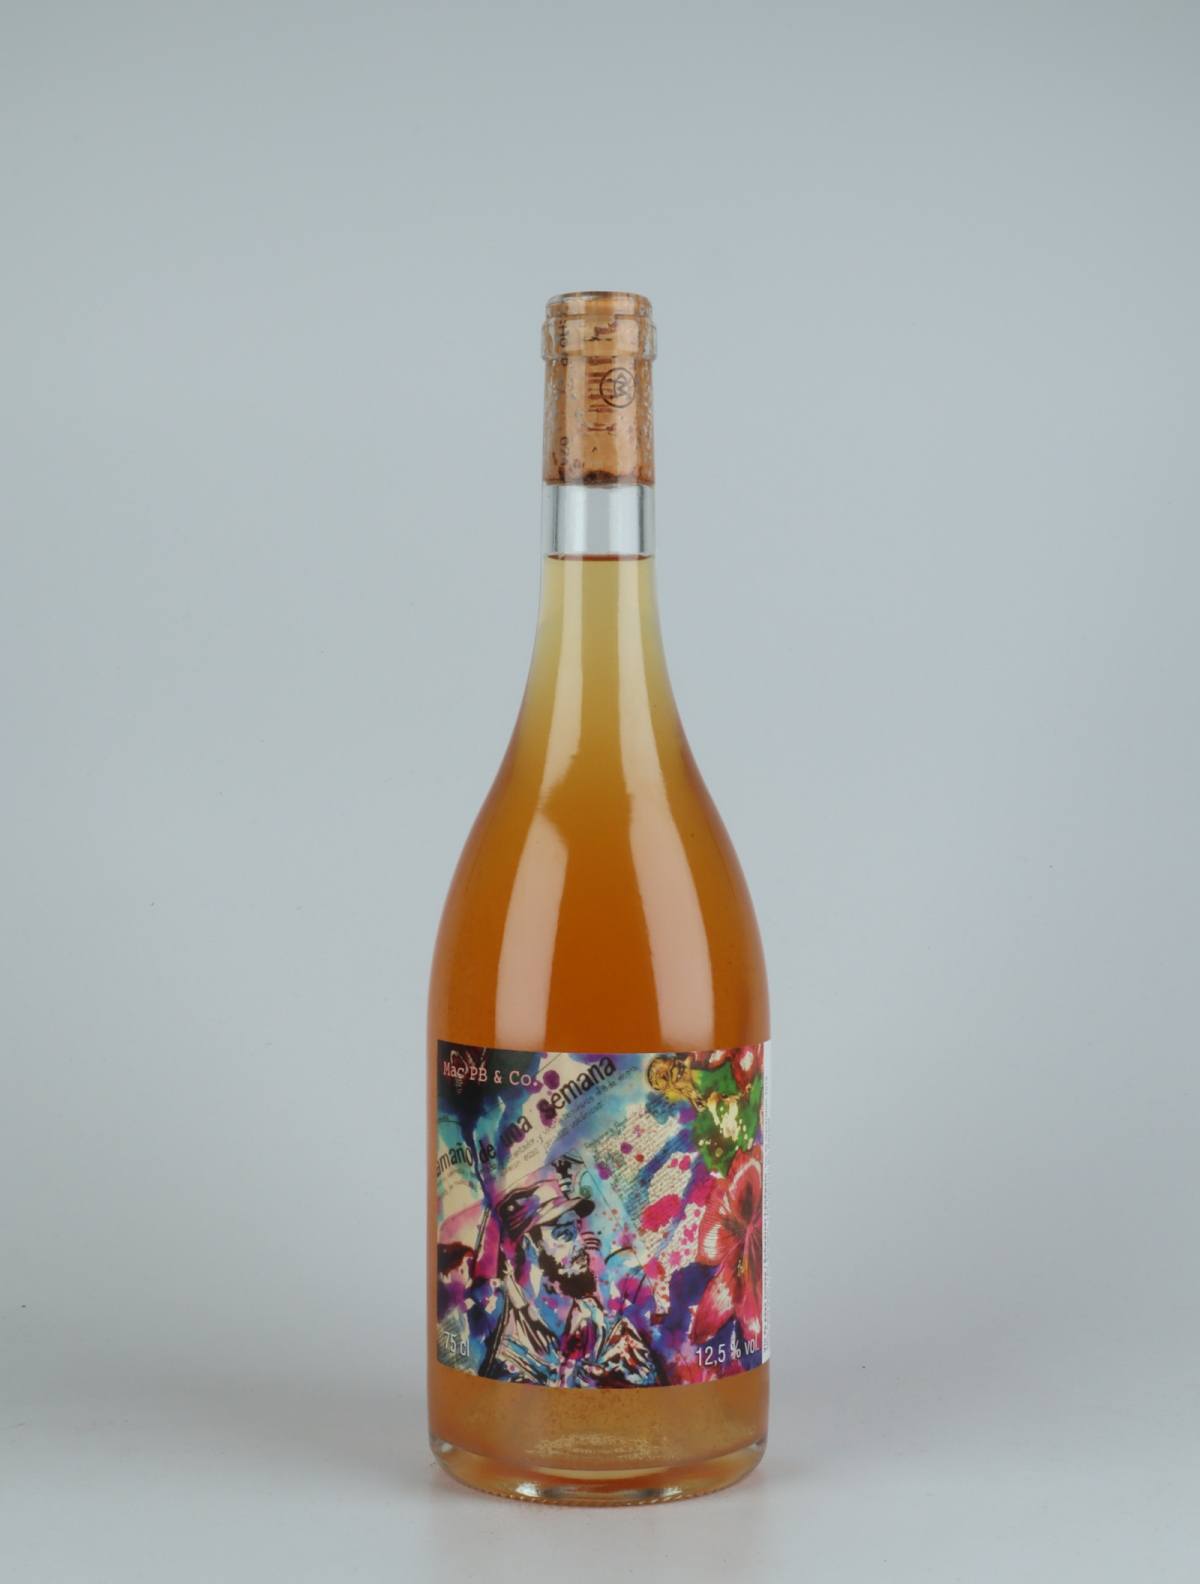 A bottle 2019 Mac PB & Co. Orange wine from , Neuchâtel in Switzerland